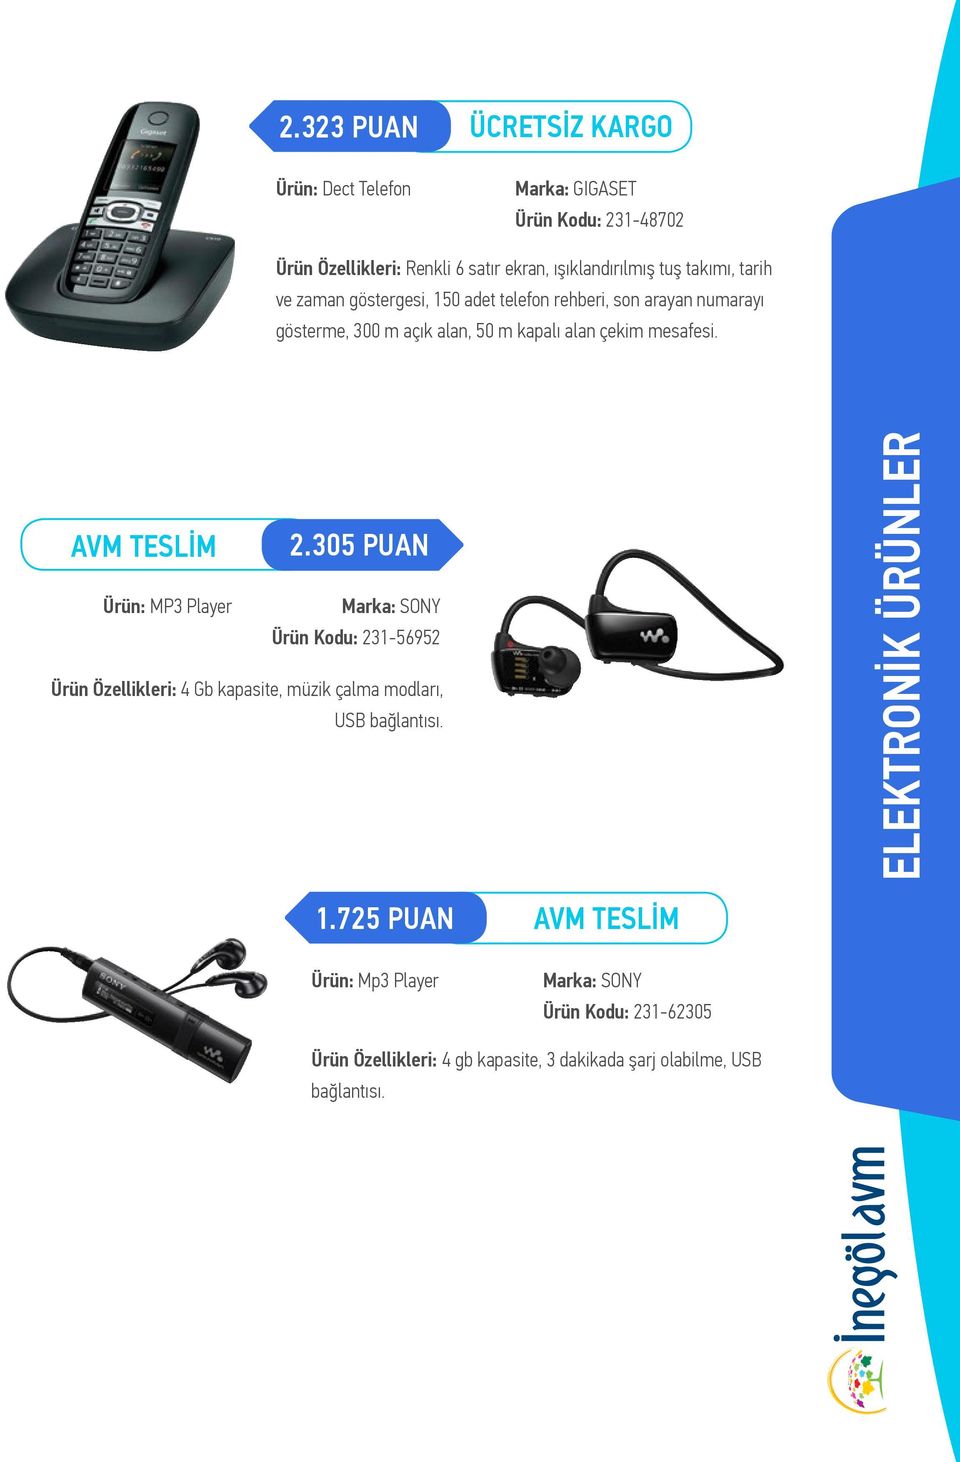 305 PUAN Ürün: MP3 Player Marka: SONY Ürün Kodu: 231-56952 Ürün Özellikleri: 4 Gb kapasite, müzik çalma modları, USB bağlantısı.